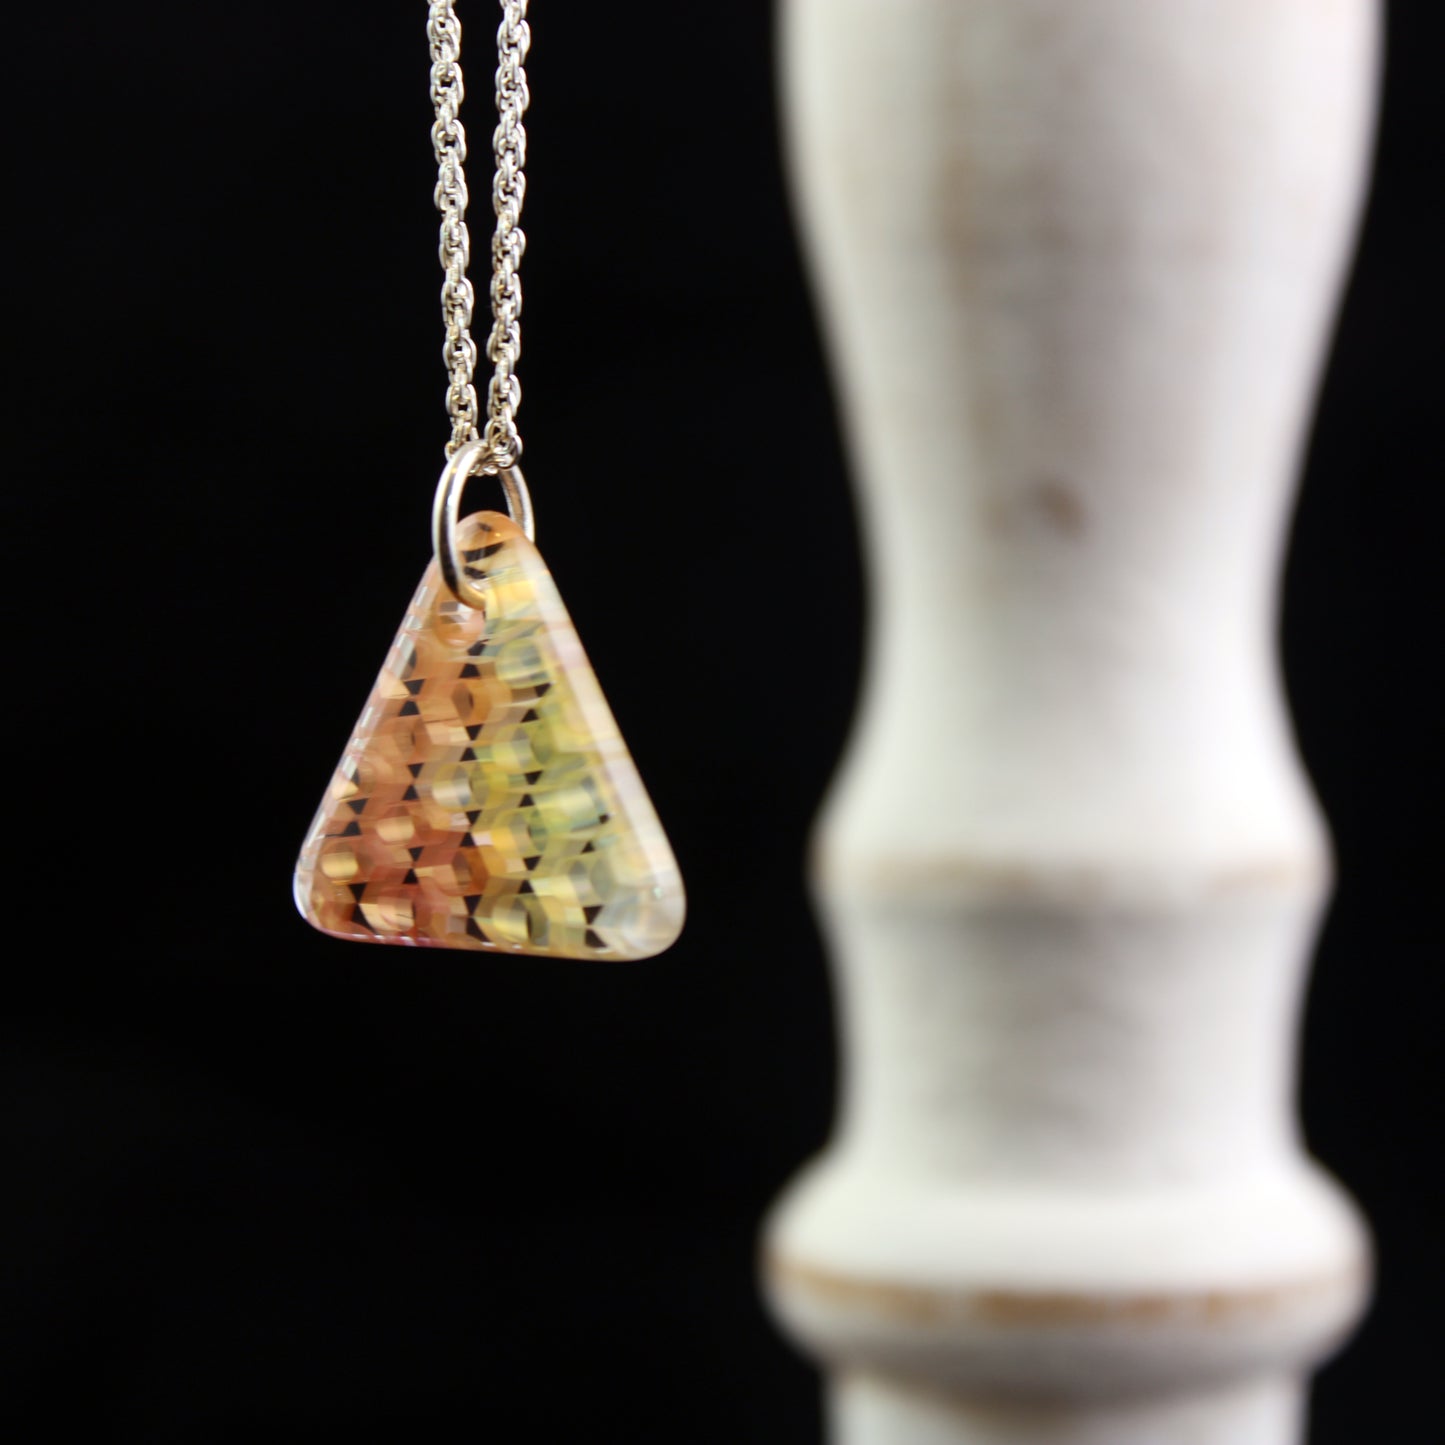 "Duality" Triangular Honeyglass Necklace